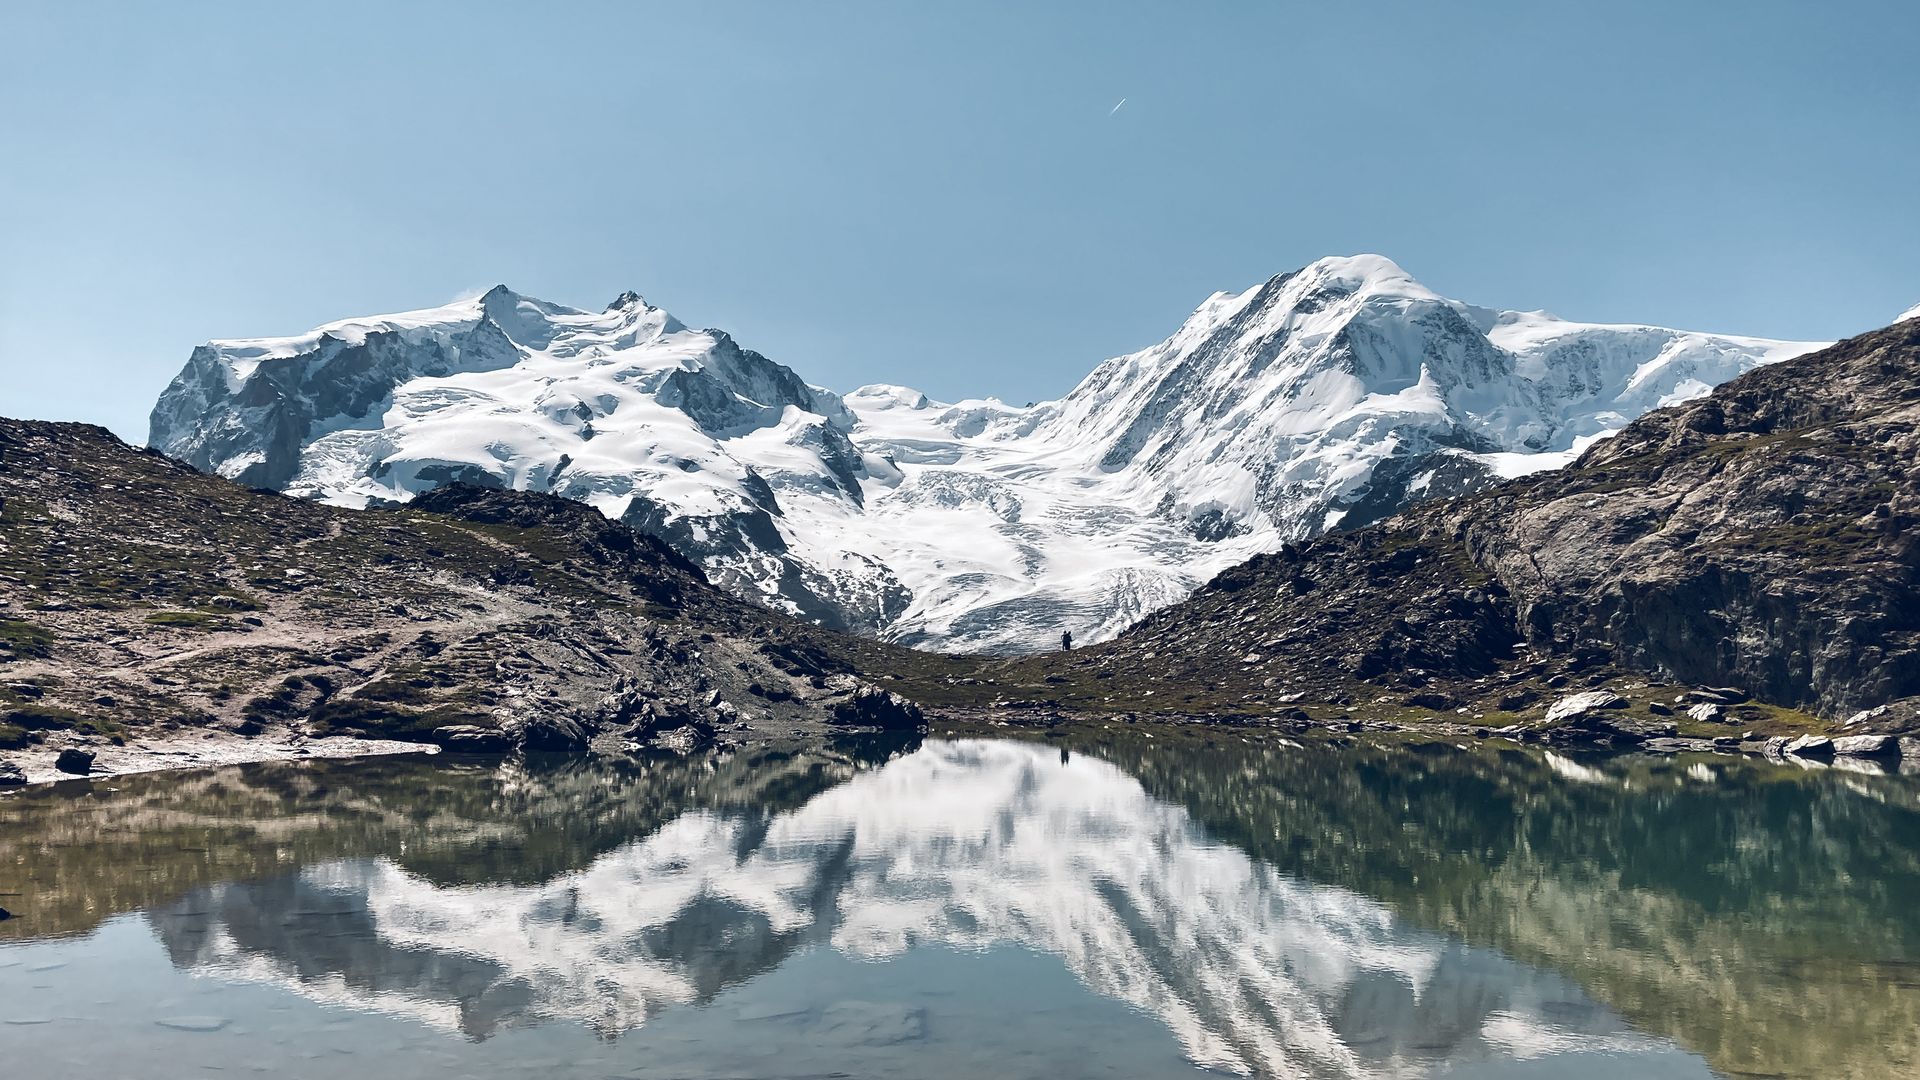 Riffelsee avec la Dufourspitze, le Breithorn et le glacier, Zermatt, Suisse